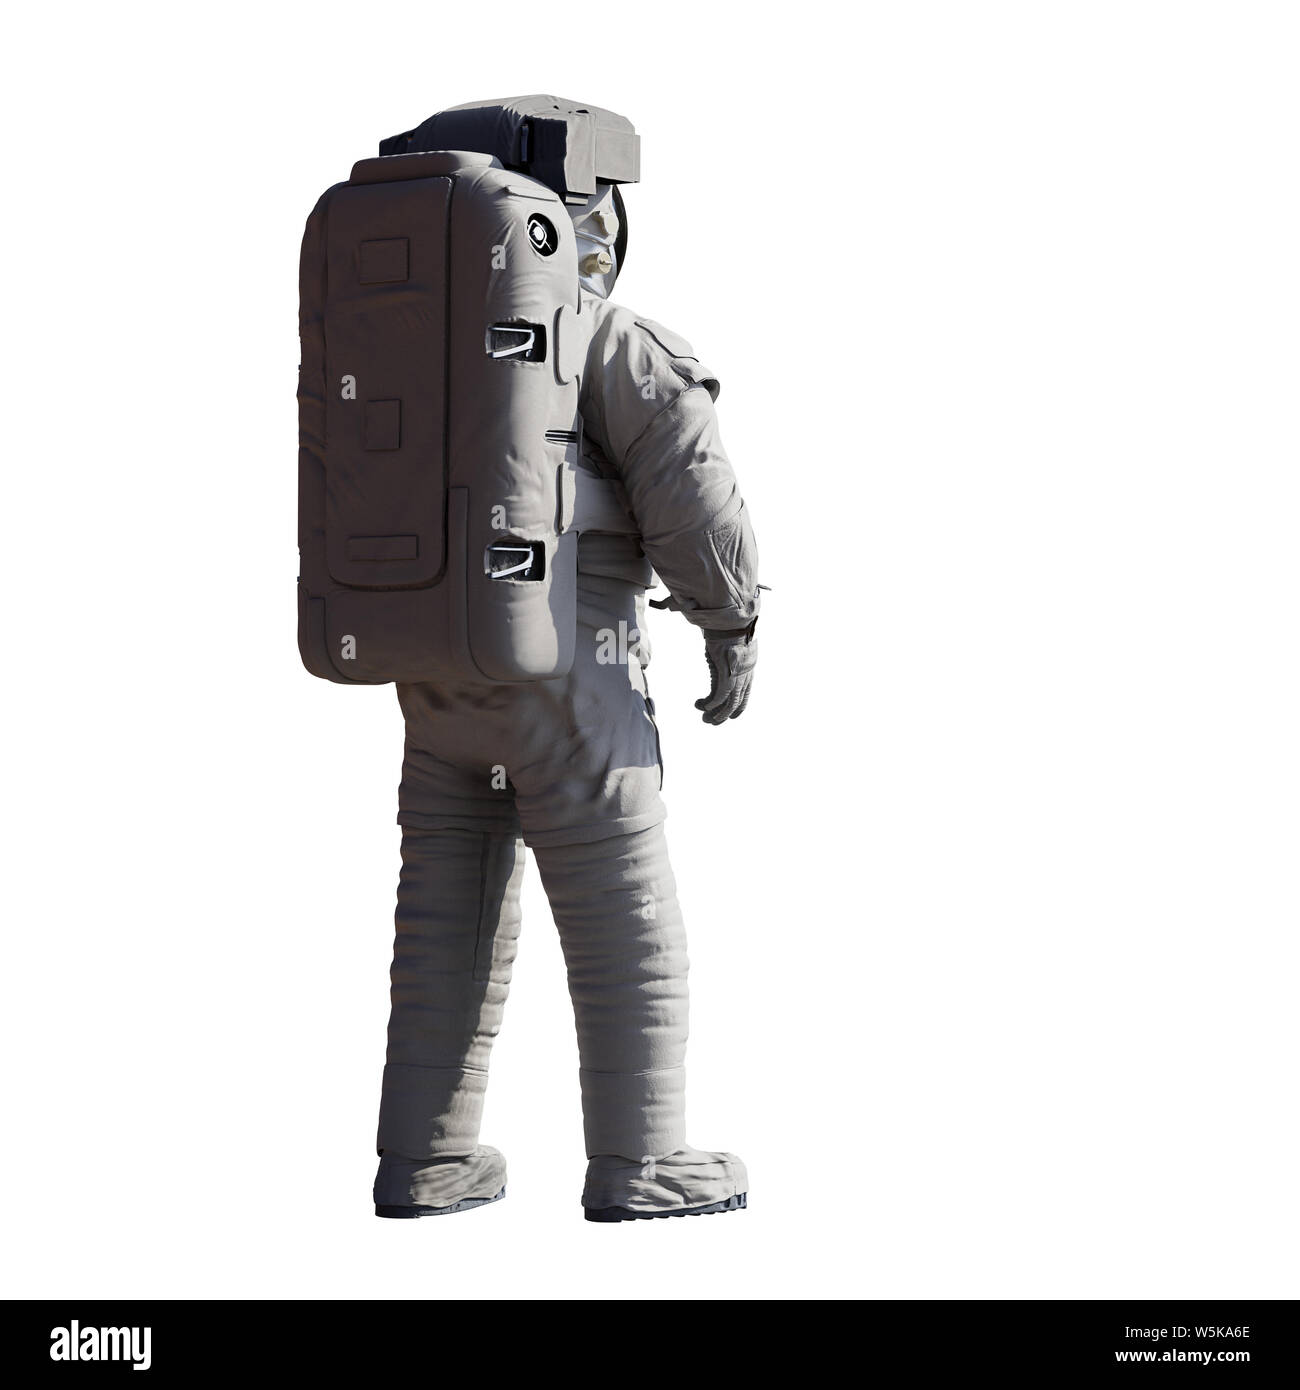 L'astronaute permanent, isolé sur fond blanc Banque D'Images